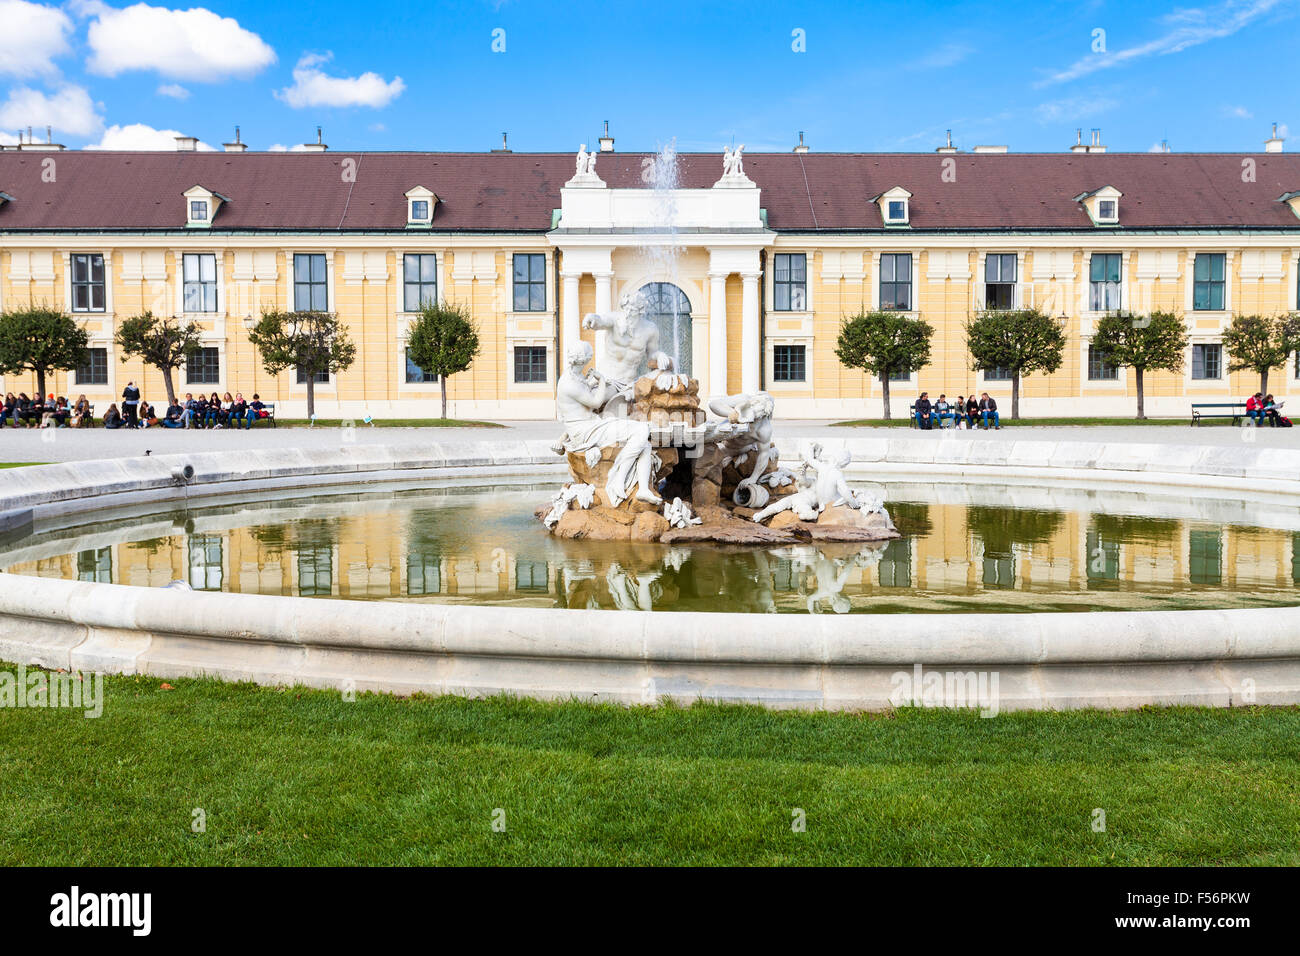 VIENNA, AUSTRIA - SEPTEMBER 29, 2015: tourists on benches near fountain in Schloss Schonbrunn palace garden. Schonbrunn Palace i Stock Photo